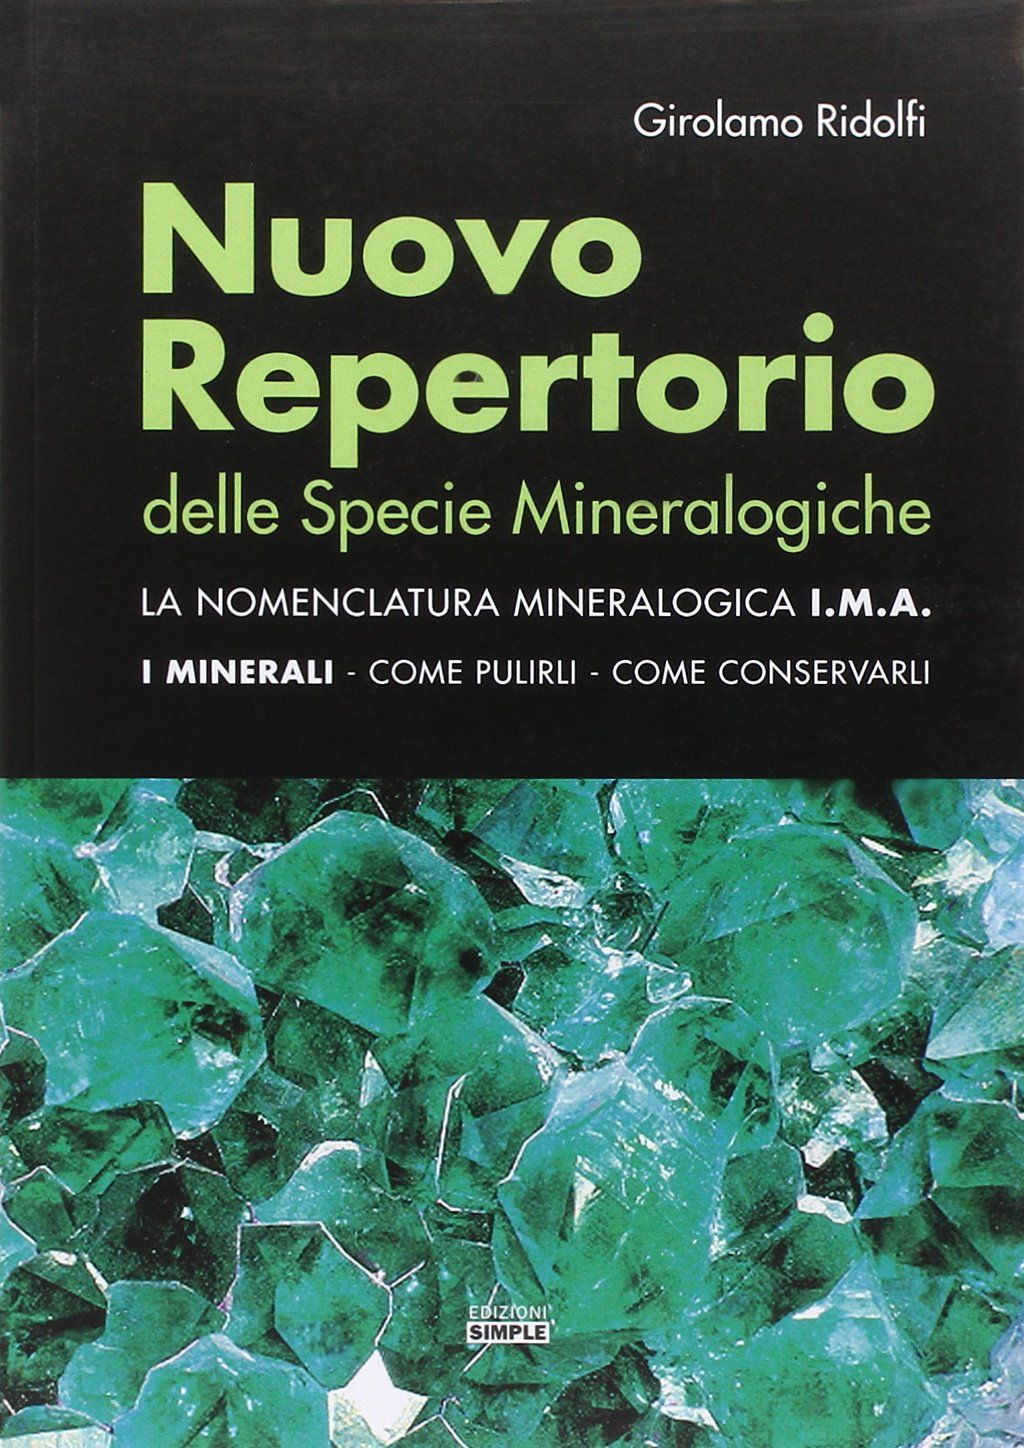 Il “Nuovo Repertorio delle Specie Mineralogiche” e il ricordo di Girolamo Ridolfi